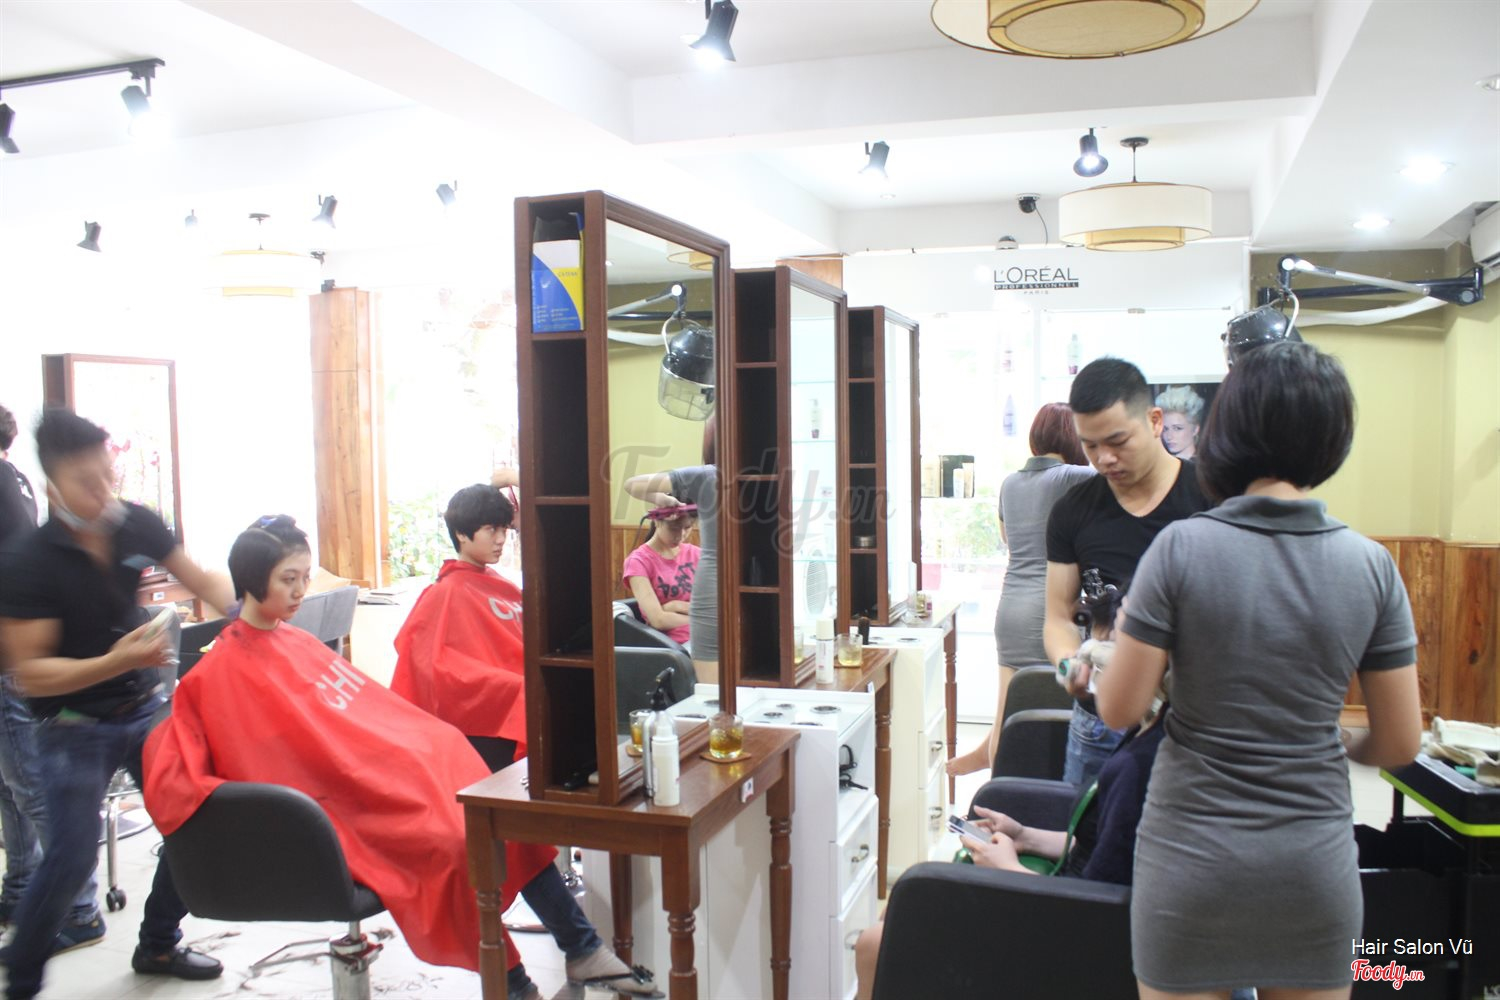 Hair Salon Vũ - Nguyễn Văn Lượng ở Quận Gò Vấp, TP. HCM | Album không gian  | Hair Salon Vũ - Nguyễn Văn Lượng 